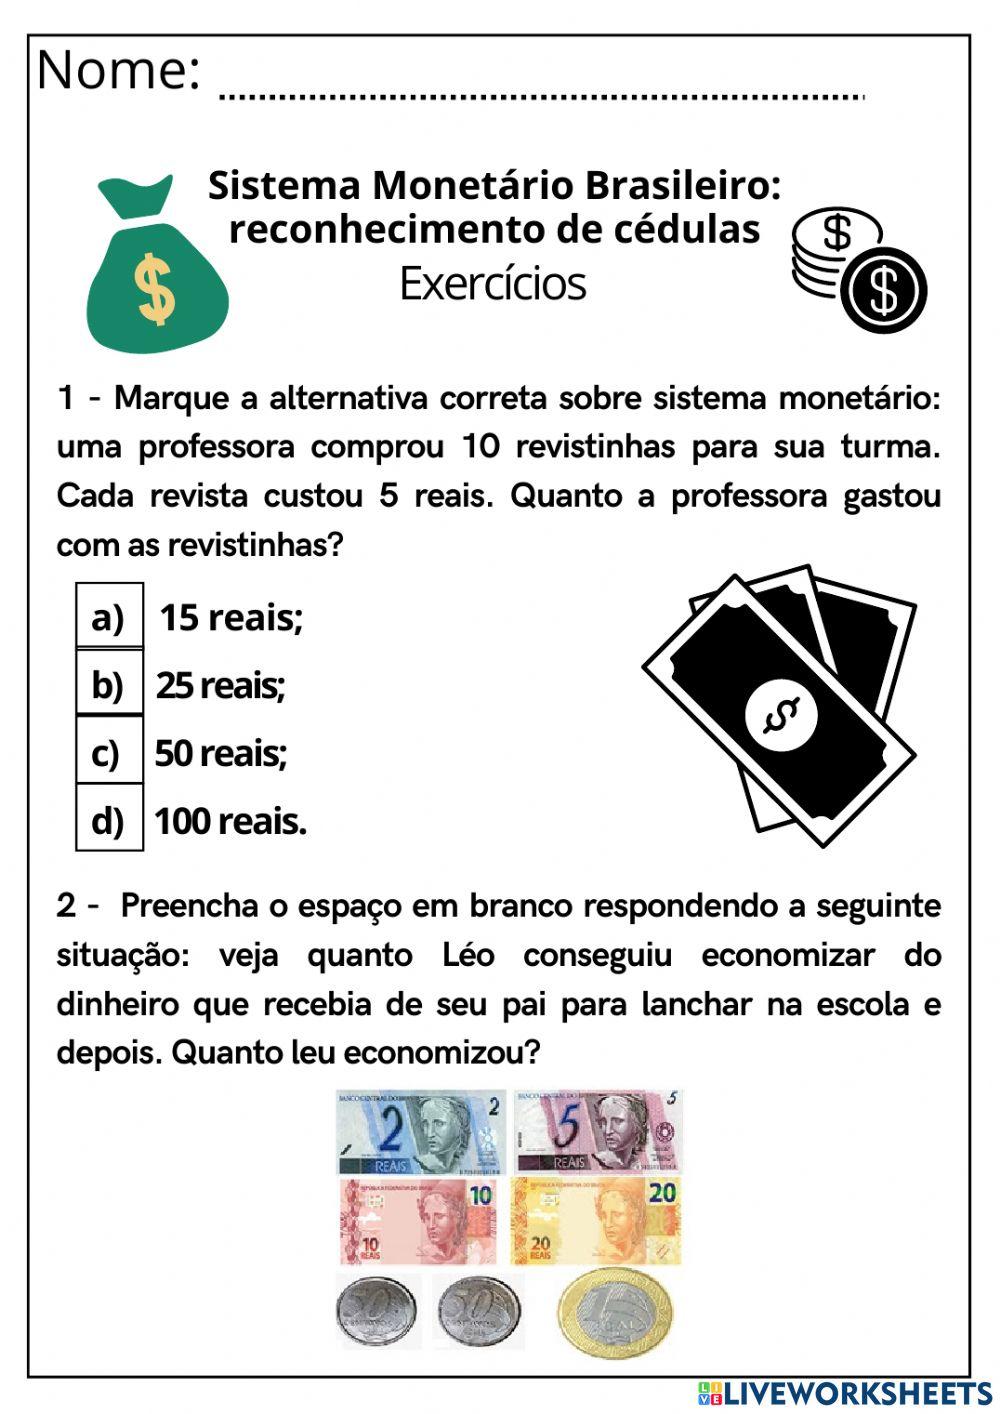 Sistema Monetário Brasileiro: reconhecimento de cédulas